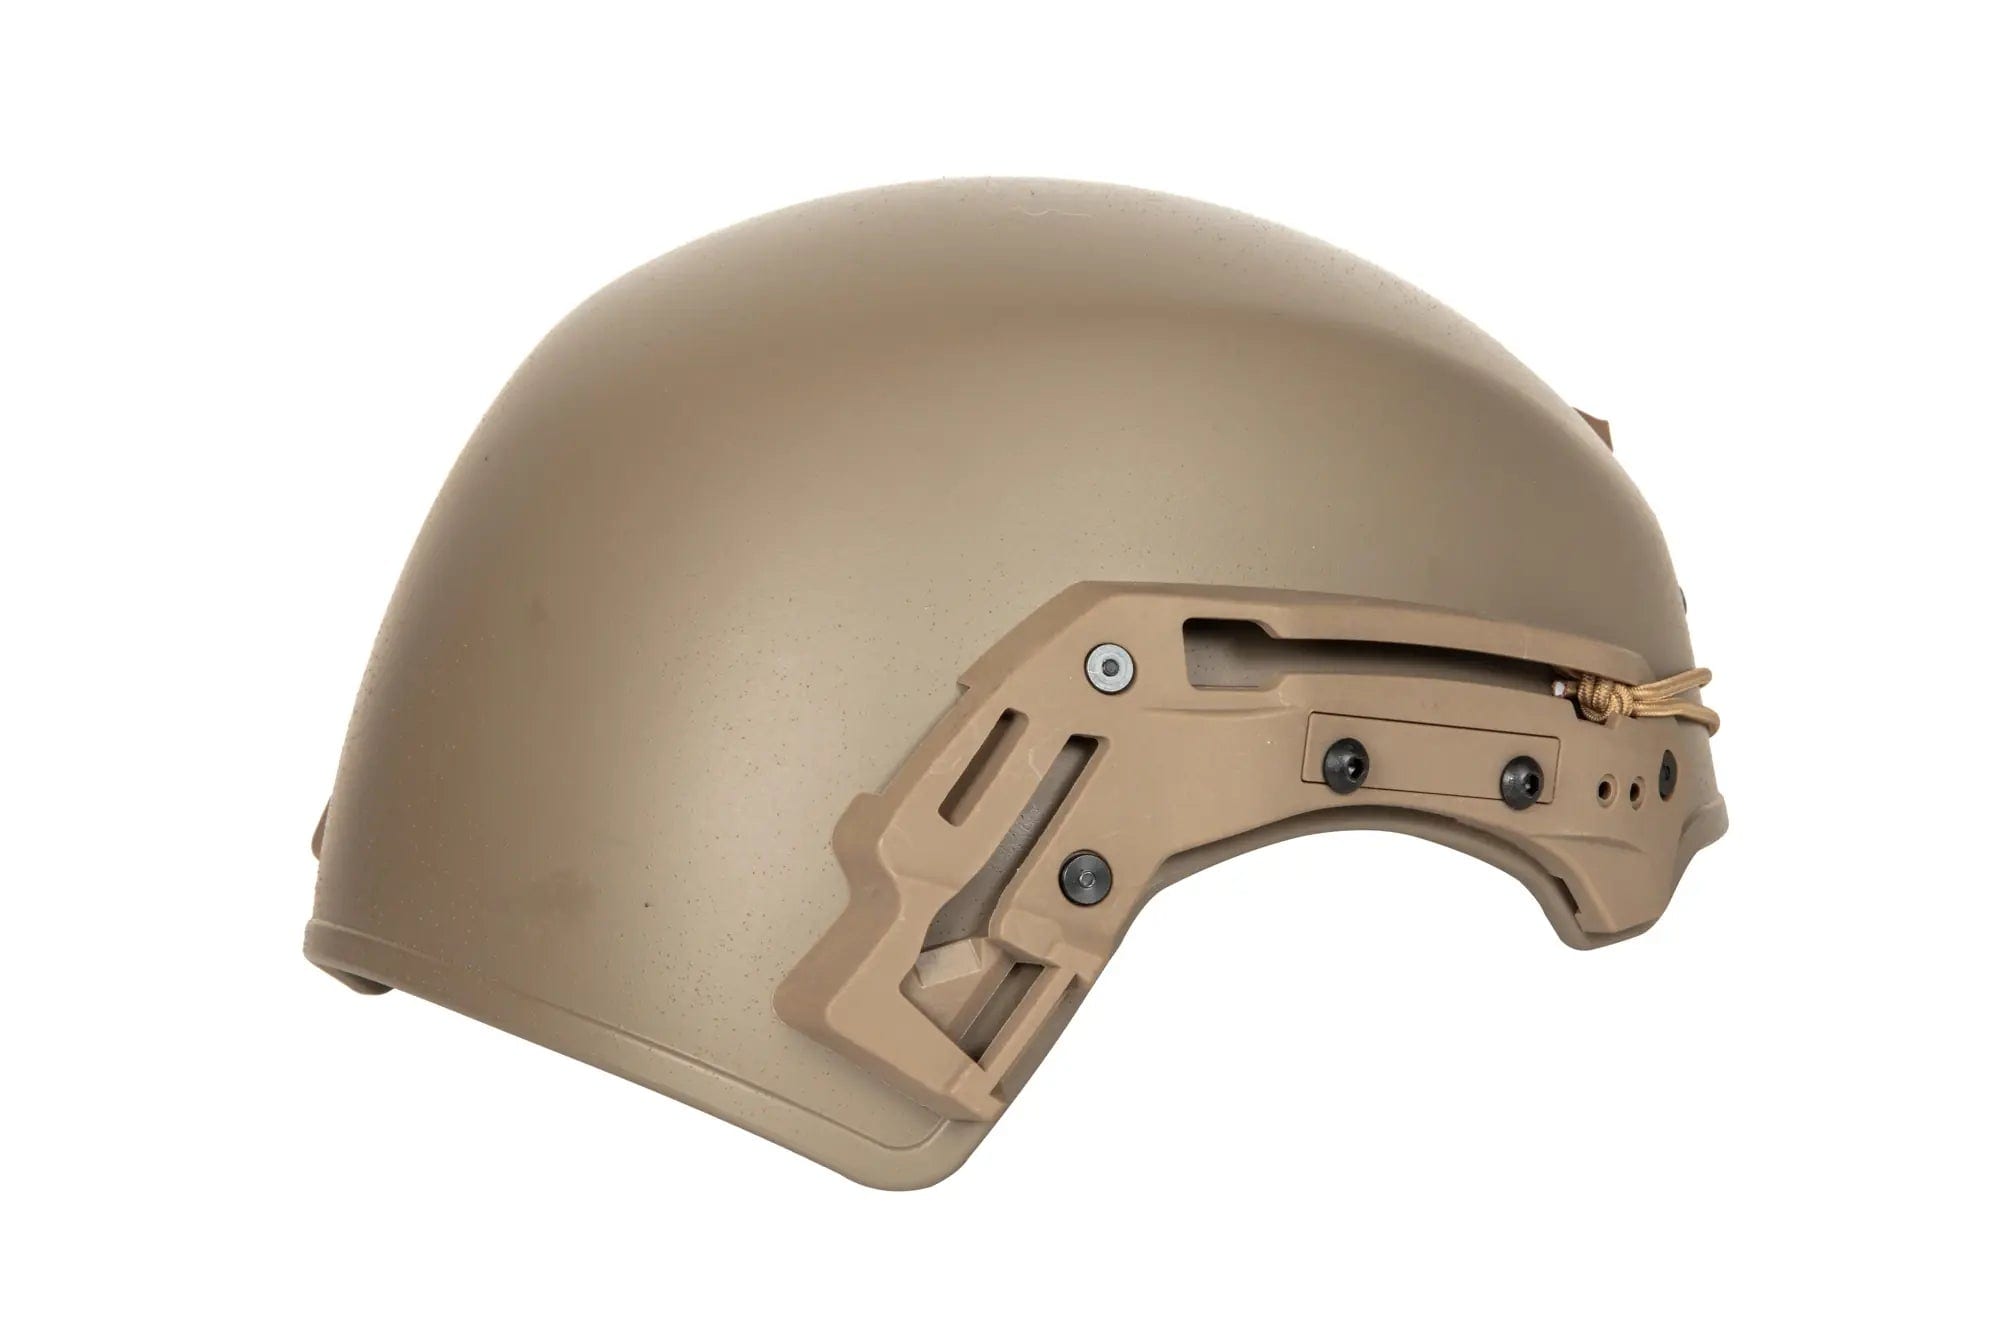 EXFIL helmet (L/XL) - Tan